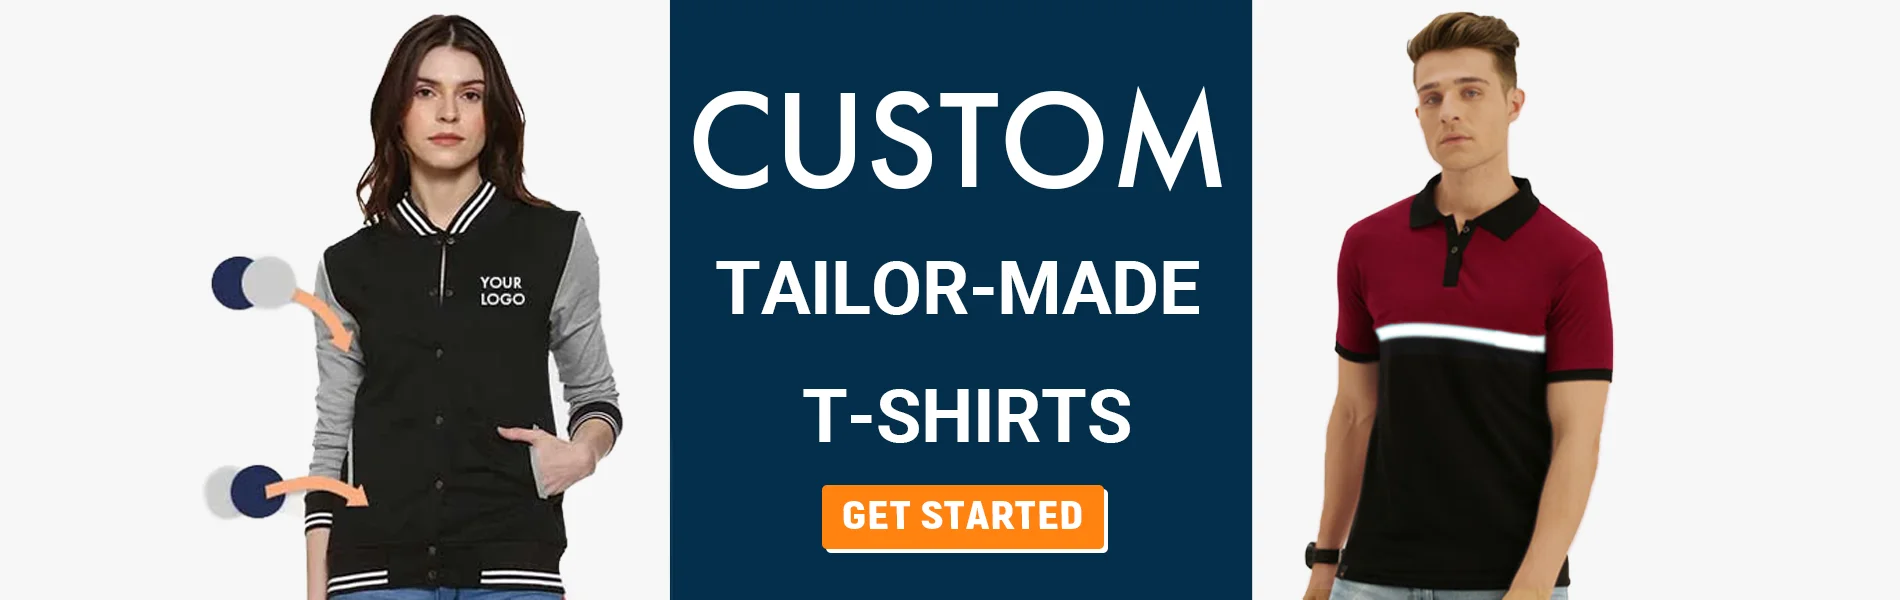 custom tailormade t-shirts patna